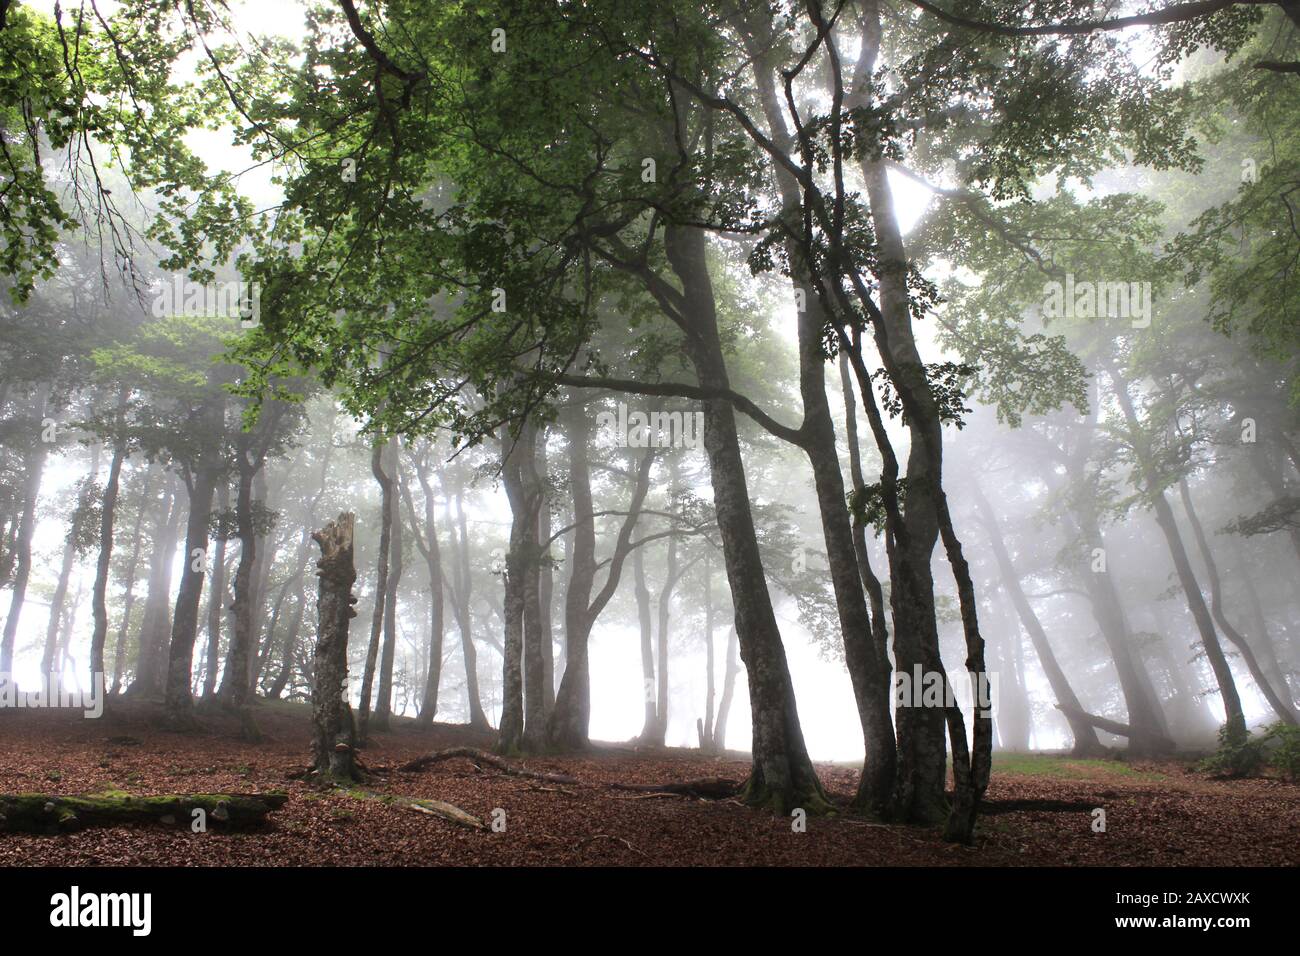 Hêtre dans la forêt d'Iraty (Pays basque, France, Espagne), dans la brume de juillet Banque D'Images